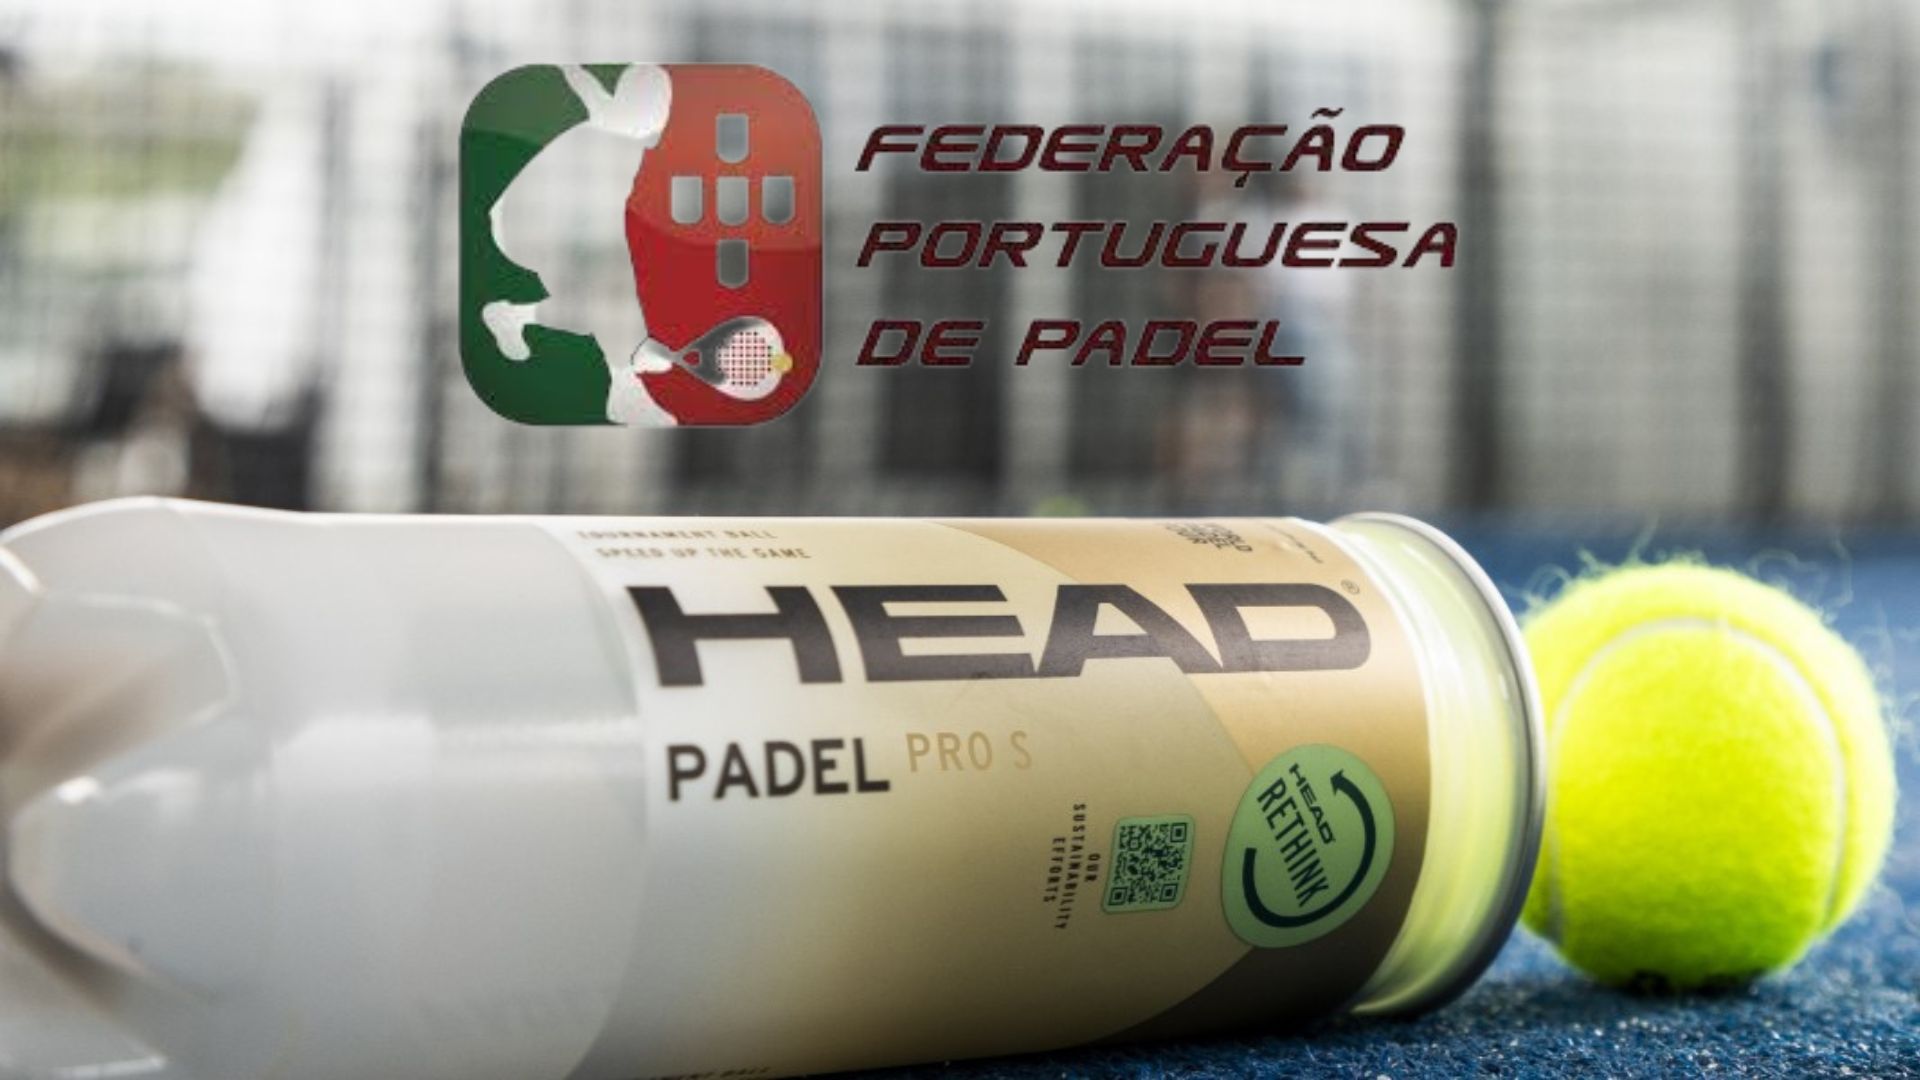 Head renouvelle son contrat avec la Fédération portugaise de padel, avec une nouveauté !